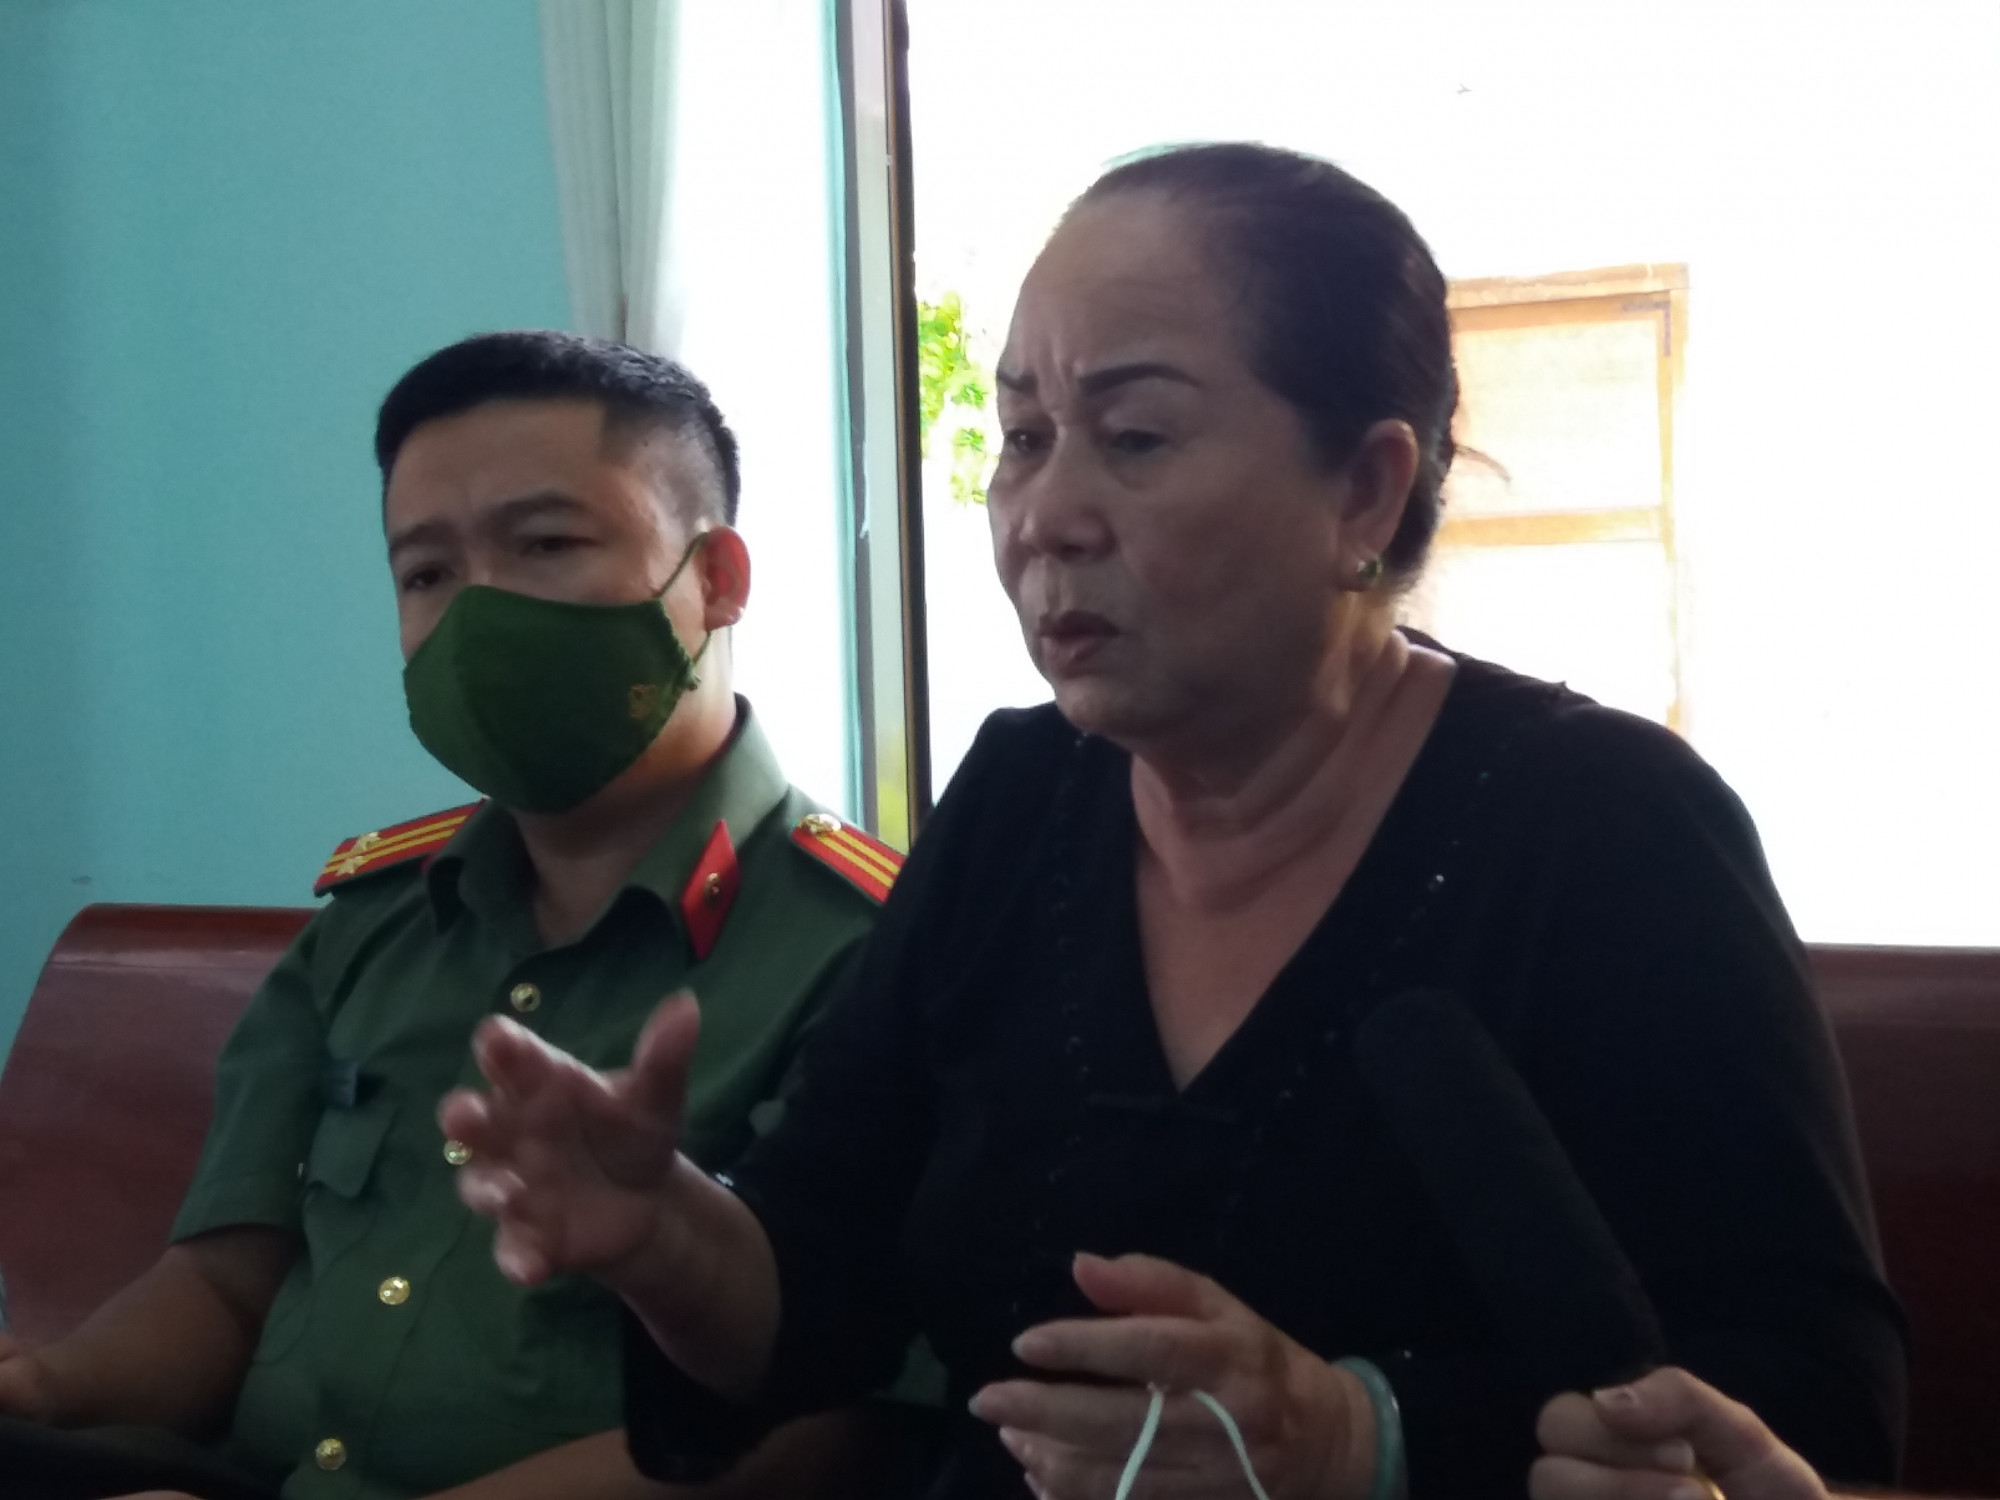 Bà Phạm Thị Hường, người đã hỗ trợ các chiến sĩ tàu C235 kể lại những câu chuyện bà đã chứng kiến và trải qua về sự kiện tàu không số năm 1968